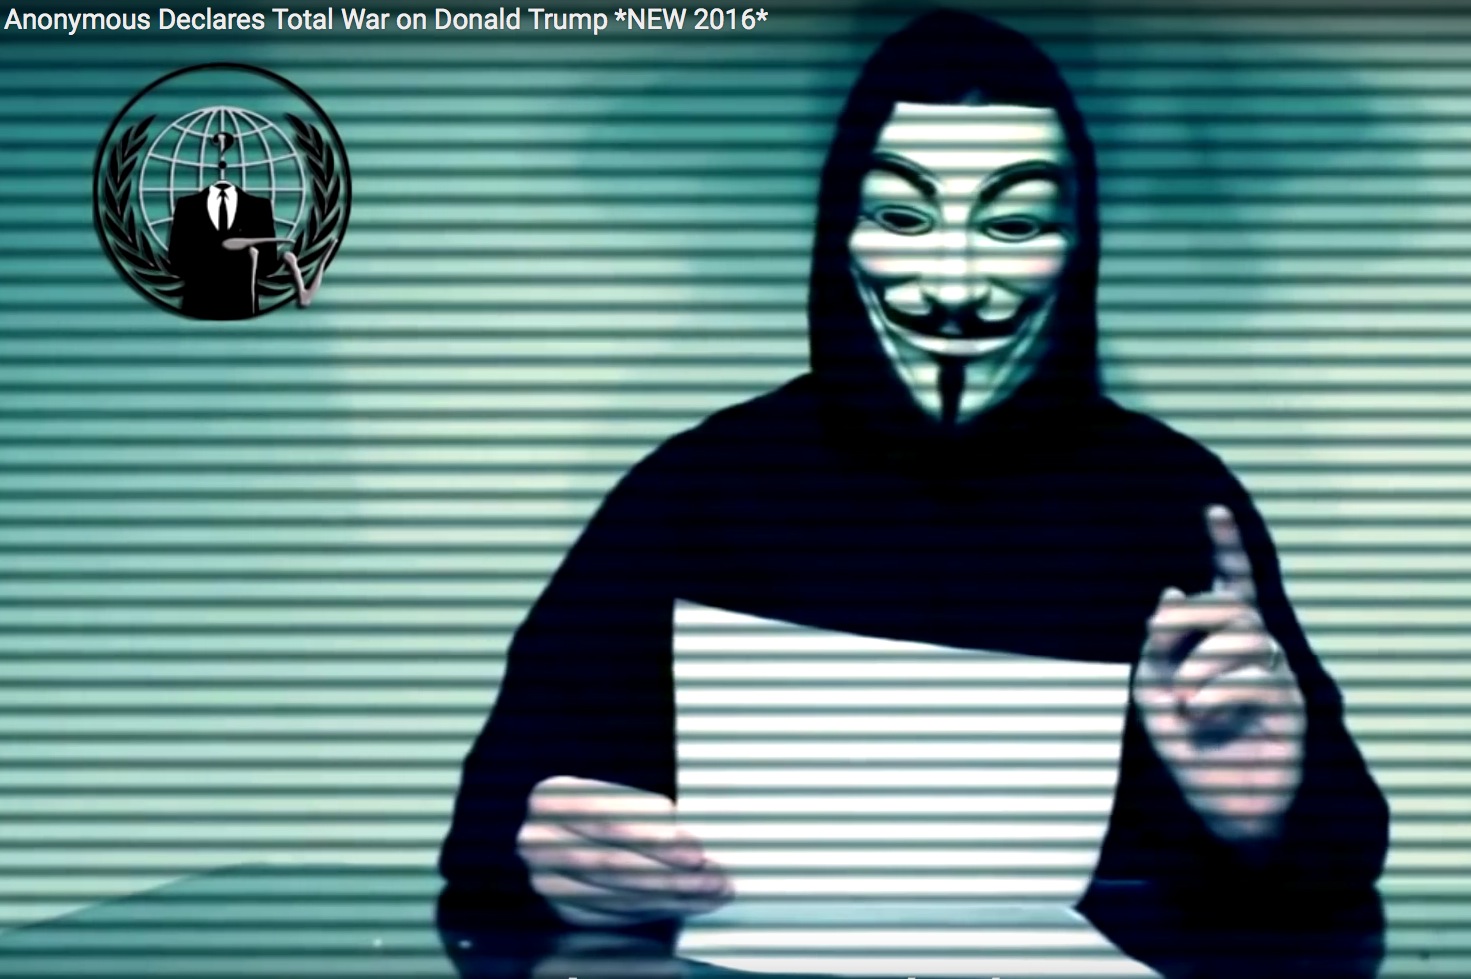 Anonymous-Video erklärt Donald Trump „totalen Krieg“